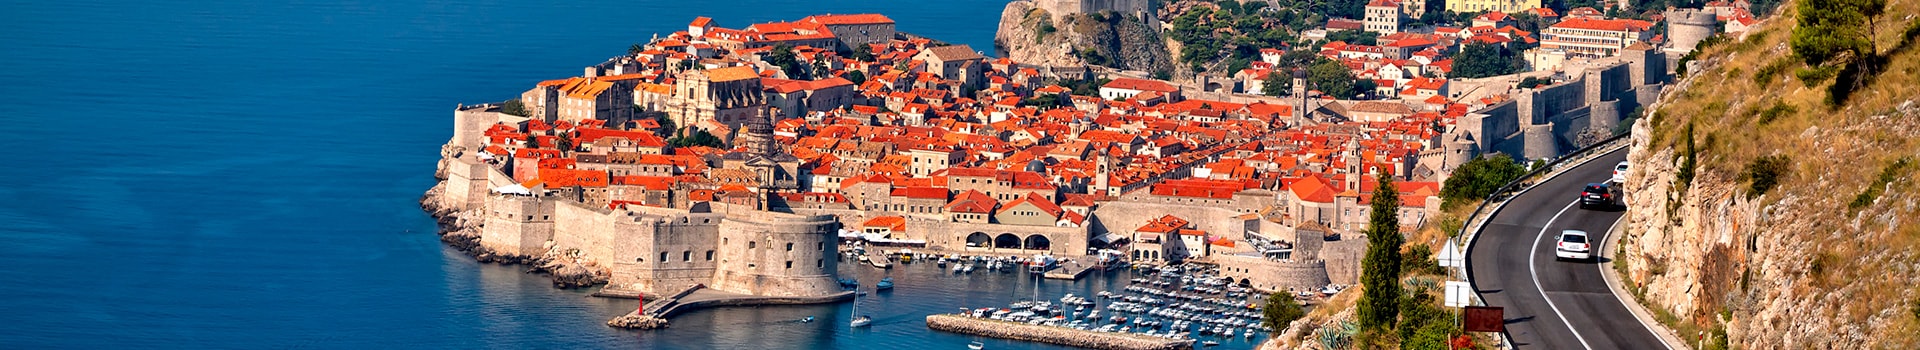 Niza - Dubrovnik